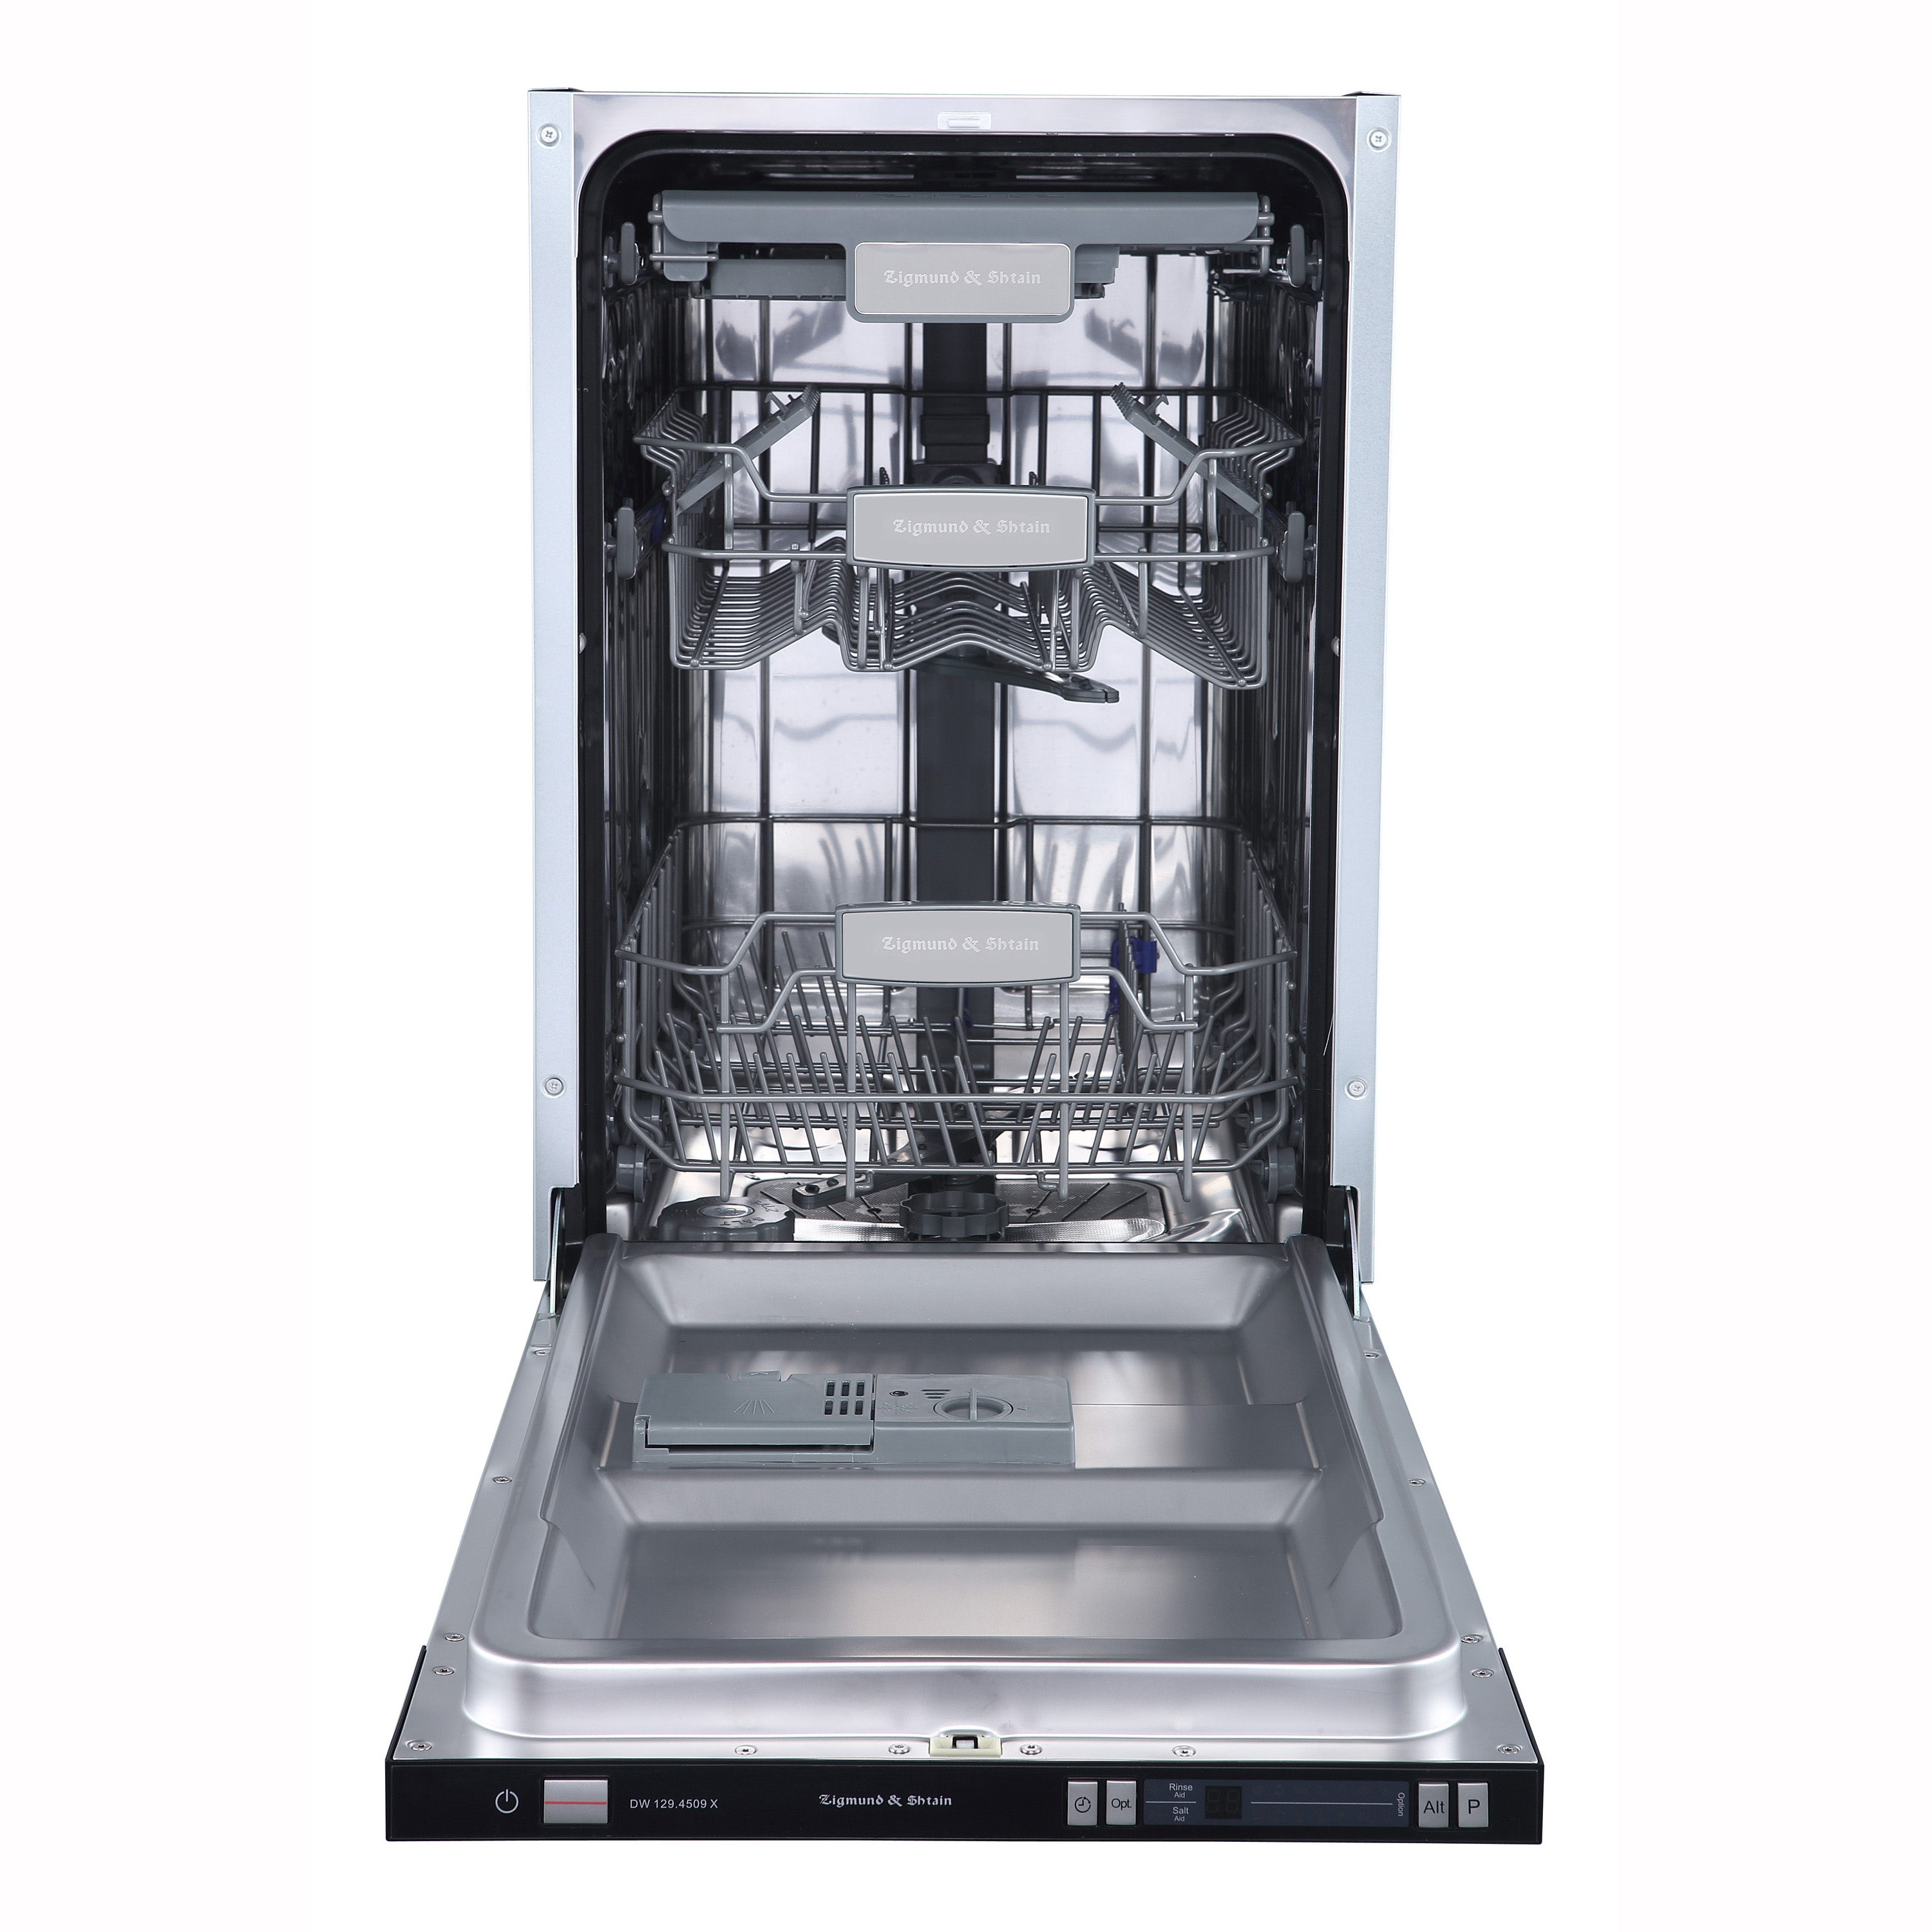 Встраиваемая посудомоечная машина Zigmund & Shtain DW 129.4509 X встраиваемая стиральная машина zigmund